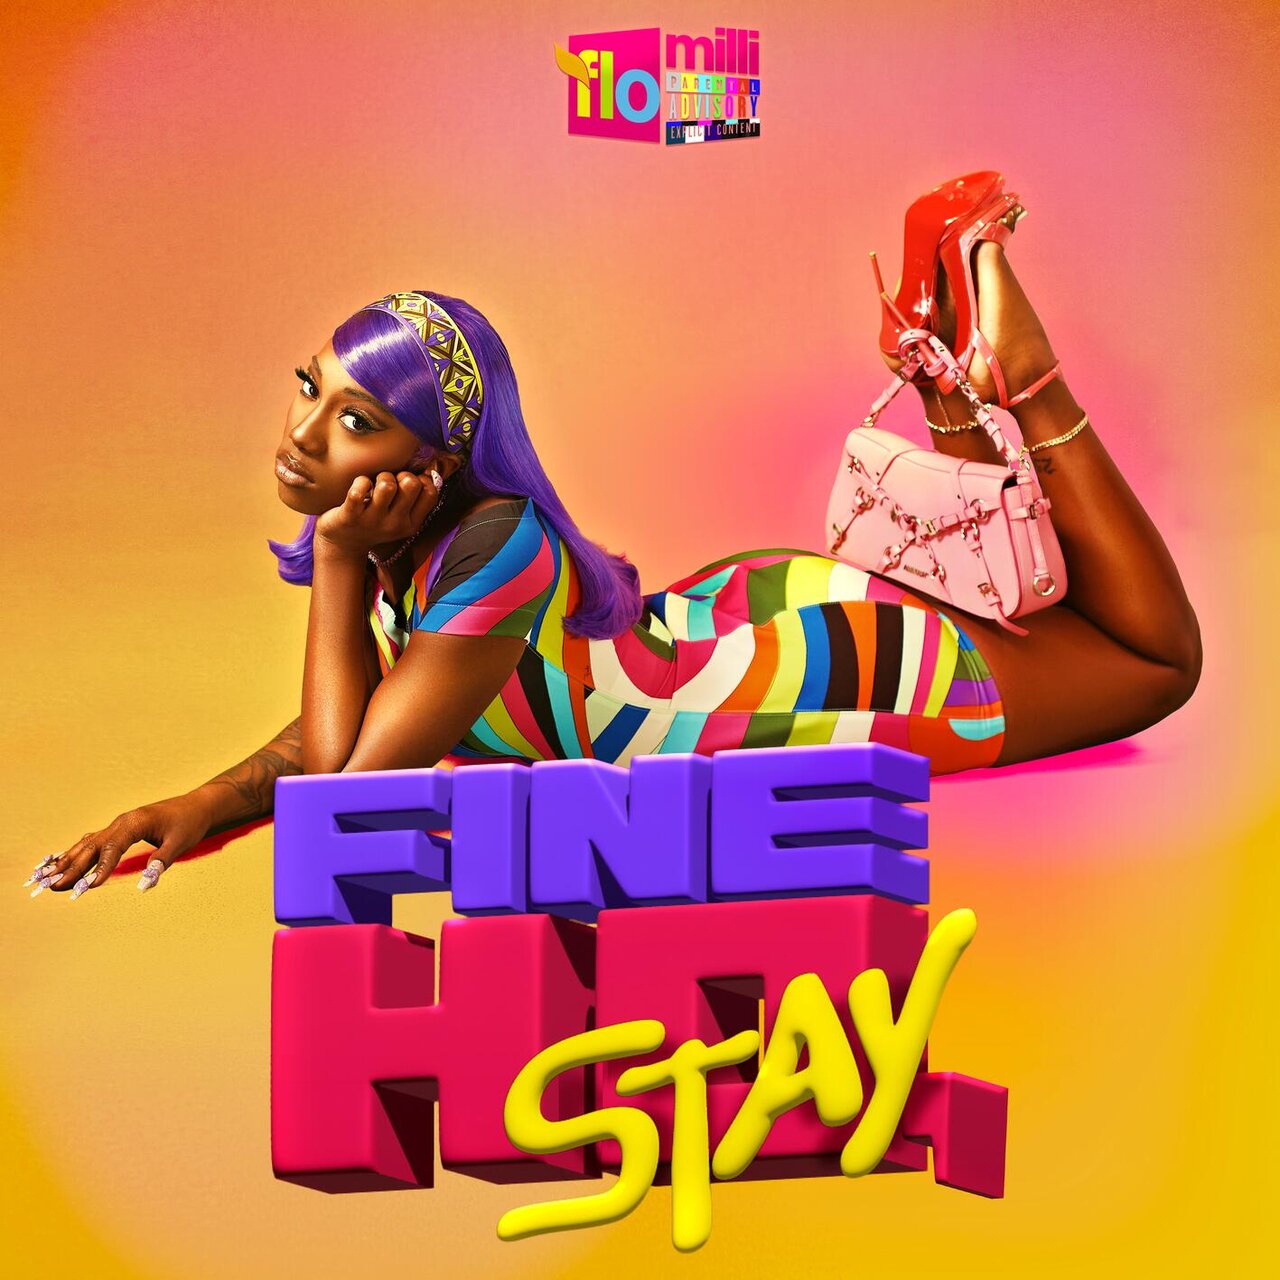 Flo Milli featuring Gunna — Edible cover artwork